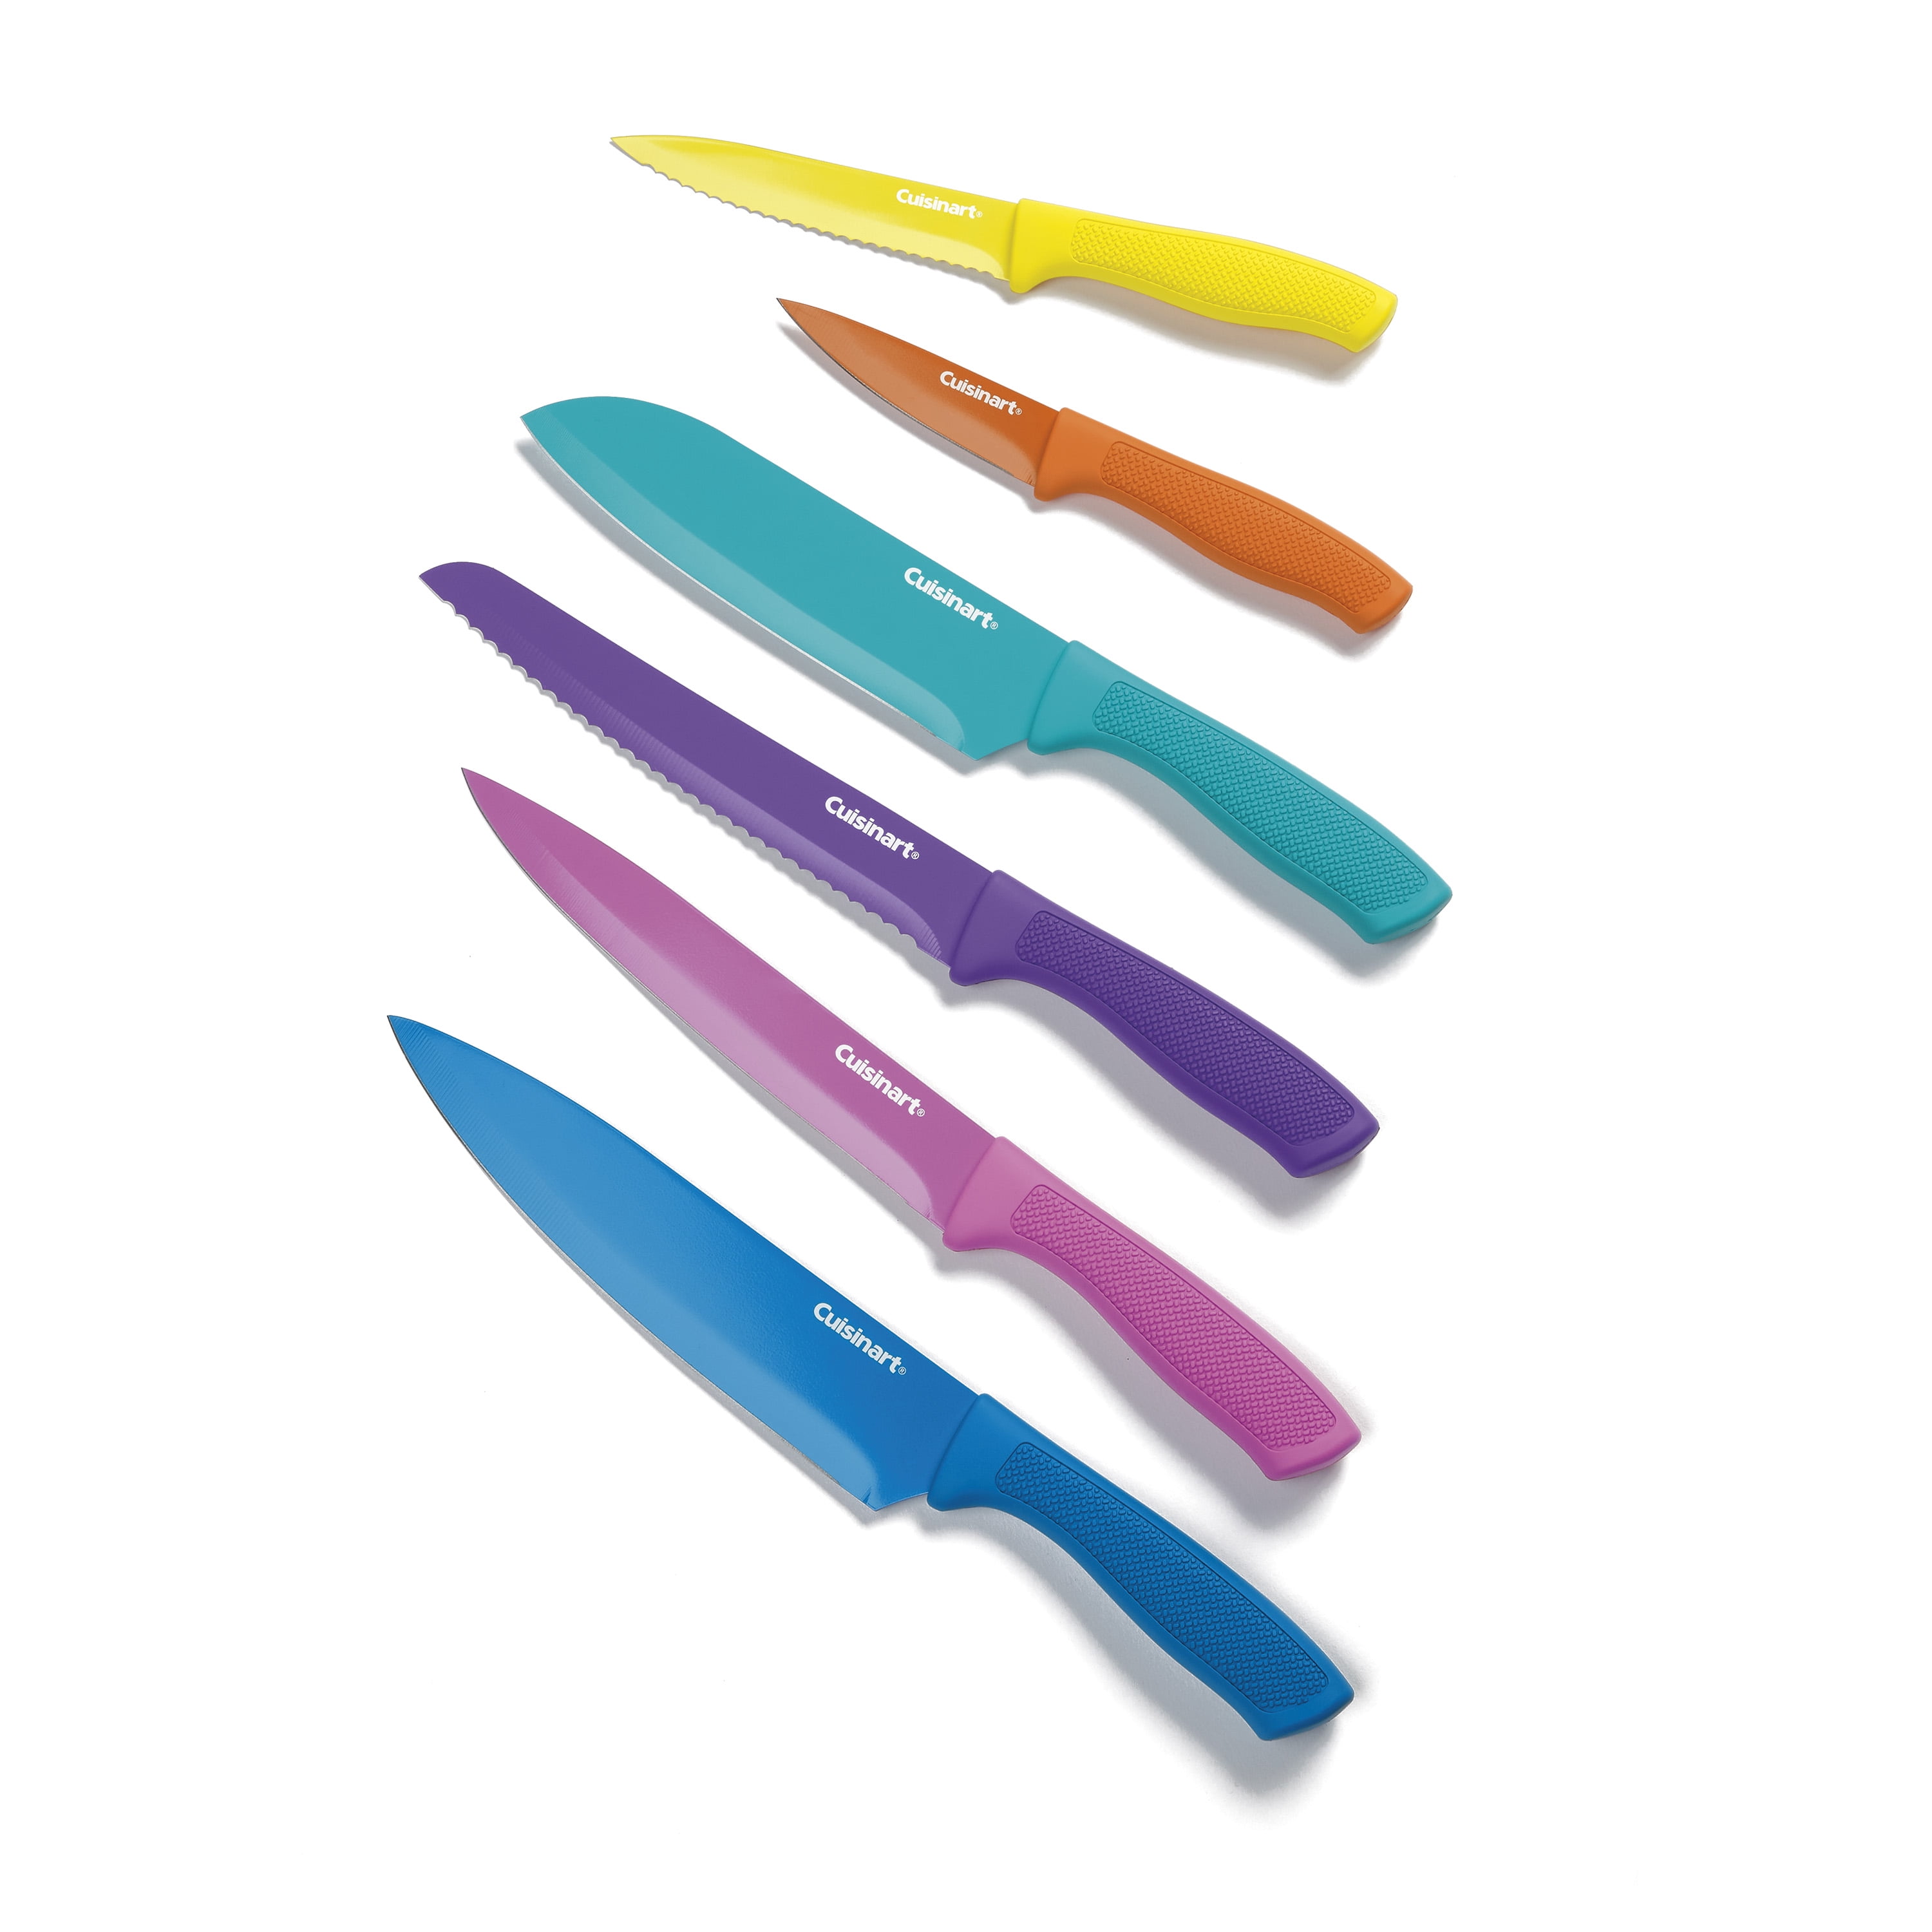 Cuisinart 12-Piece Color Knife Set Review